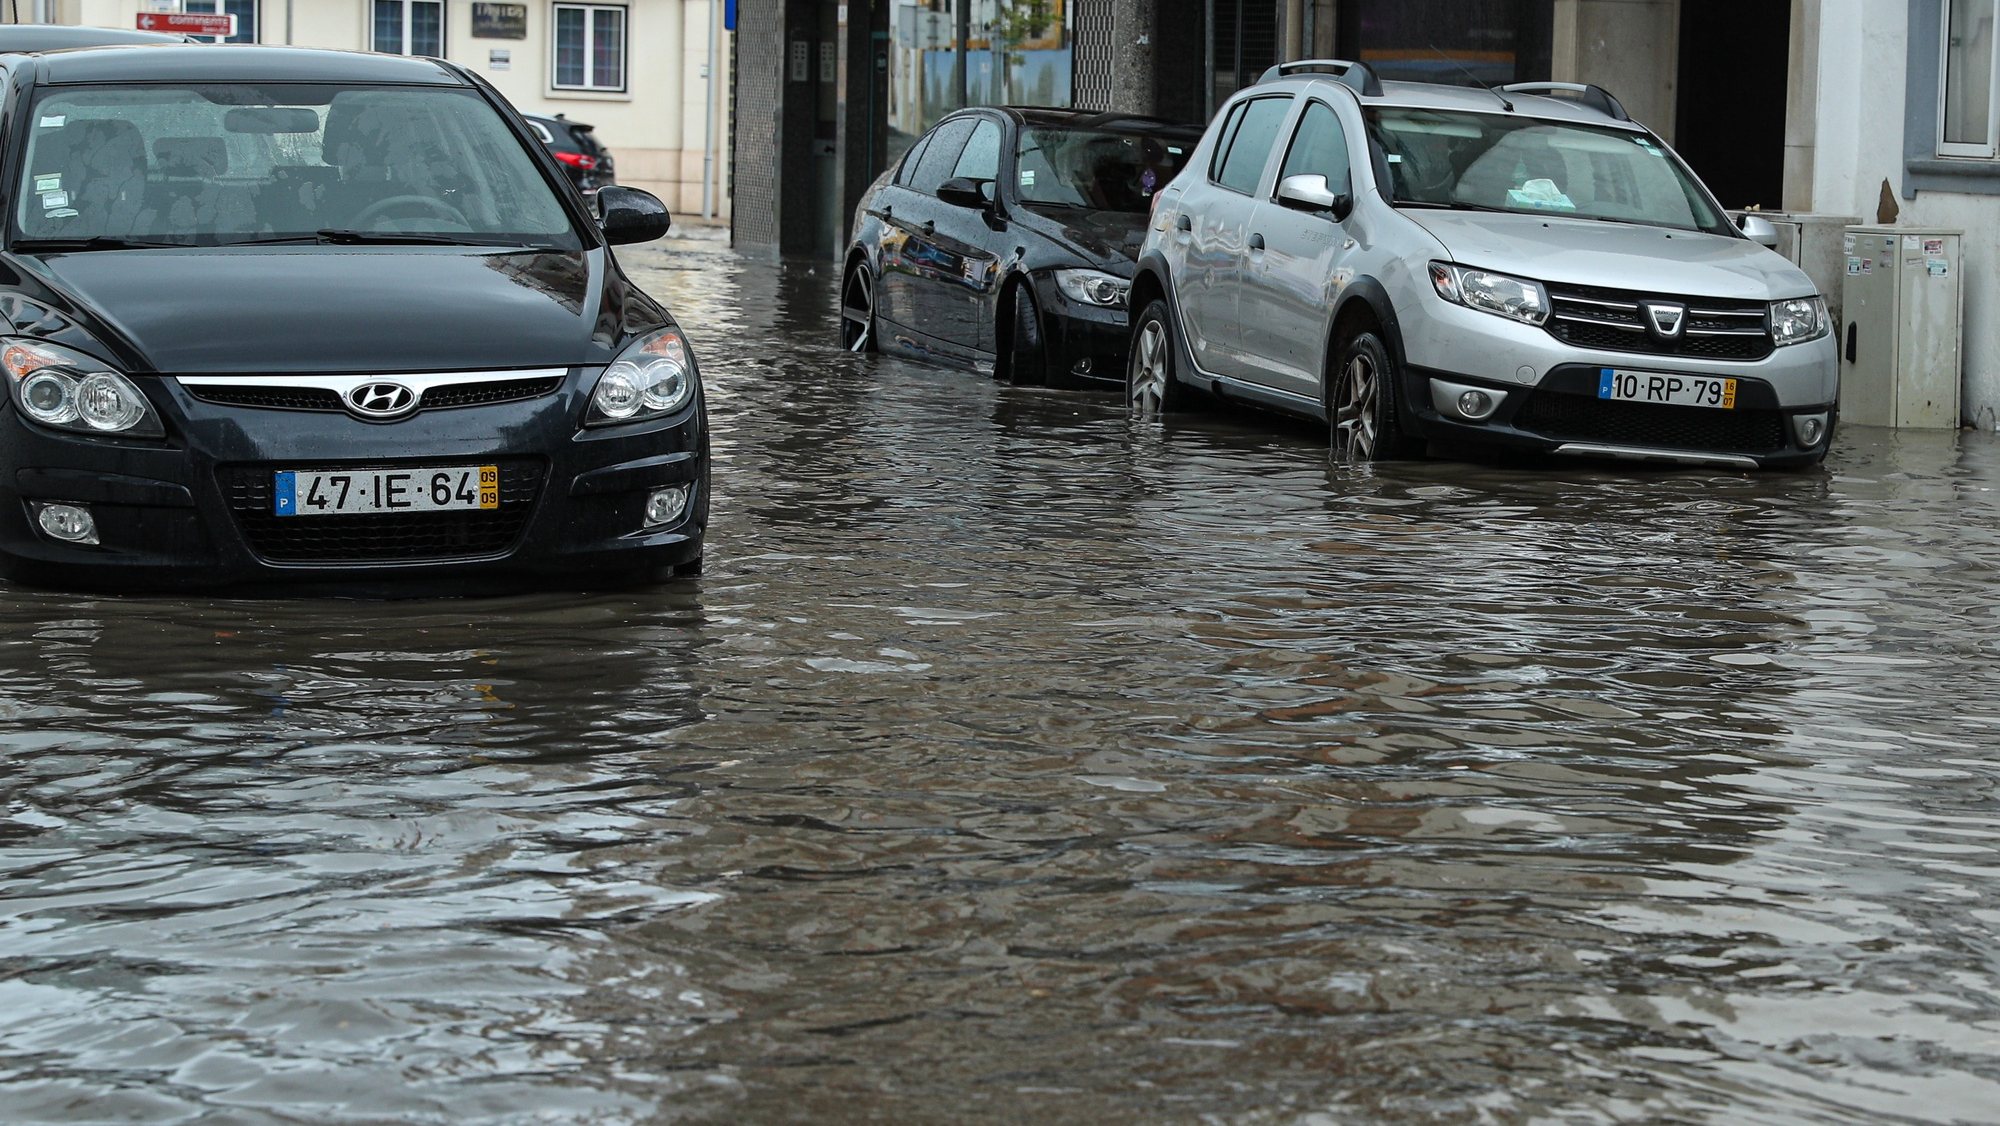 Chuva intensa em Faro, provoca várias inundações na baixa da cidade, Faro, 20 de março de 2022. LUÍS FORRA/LUSA